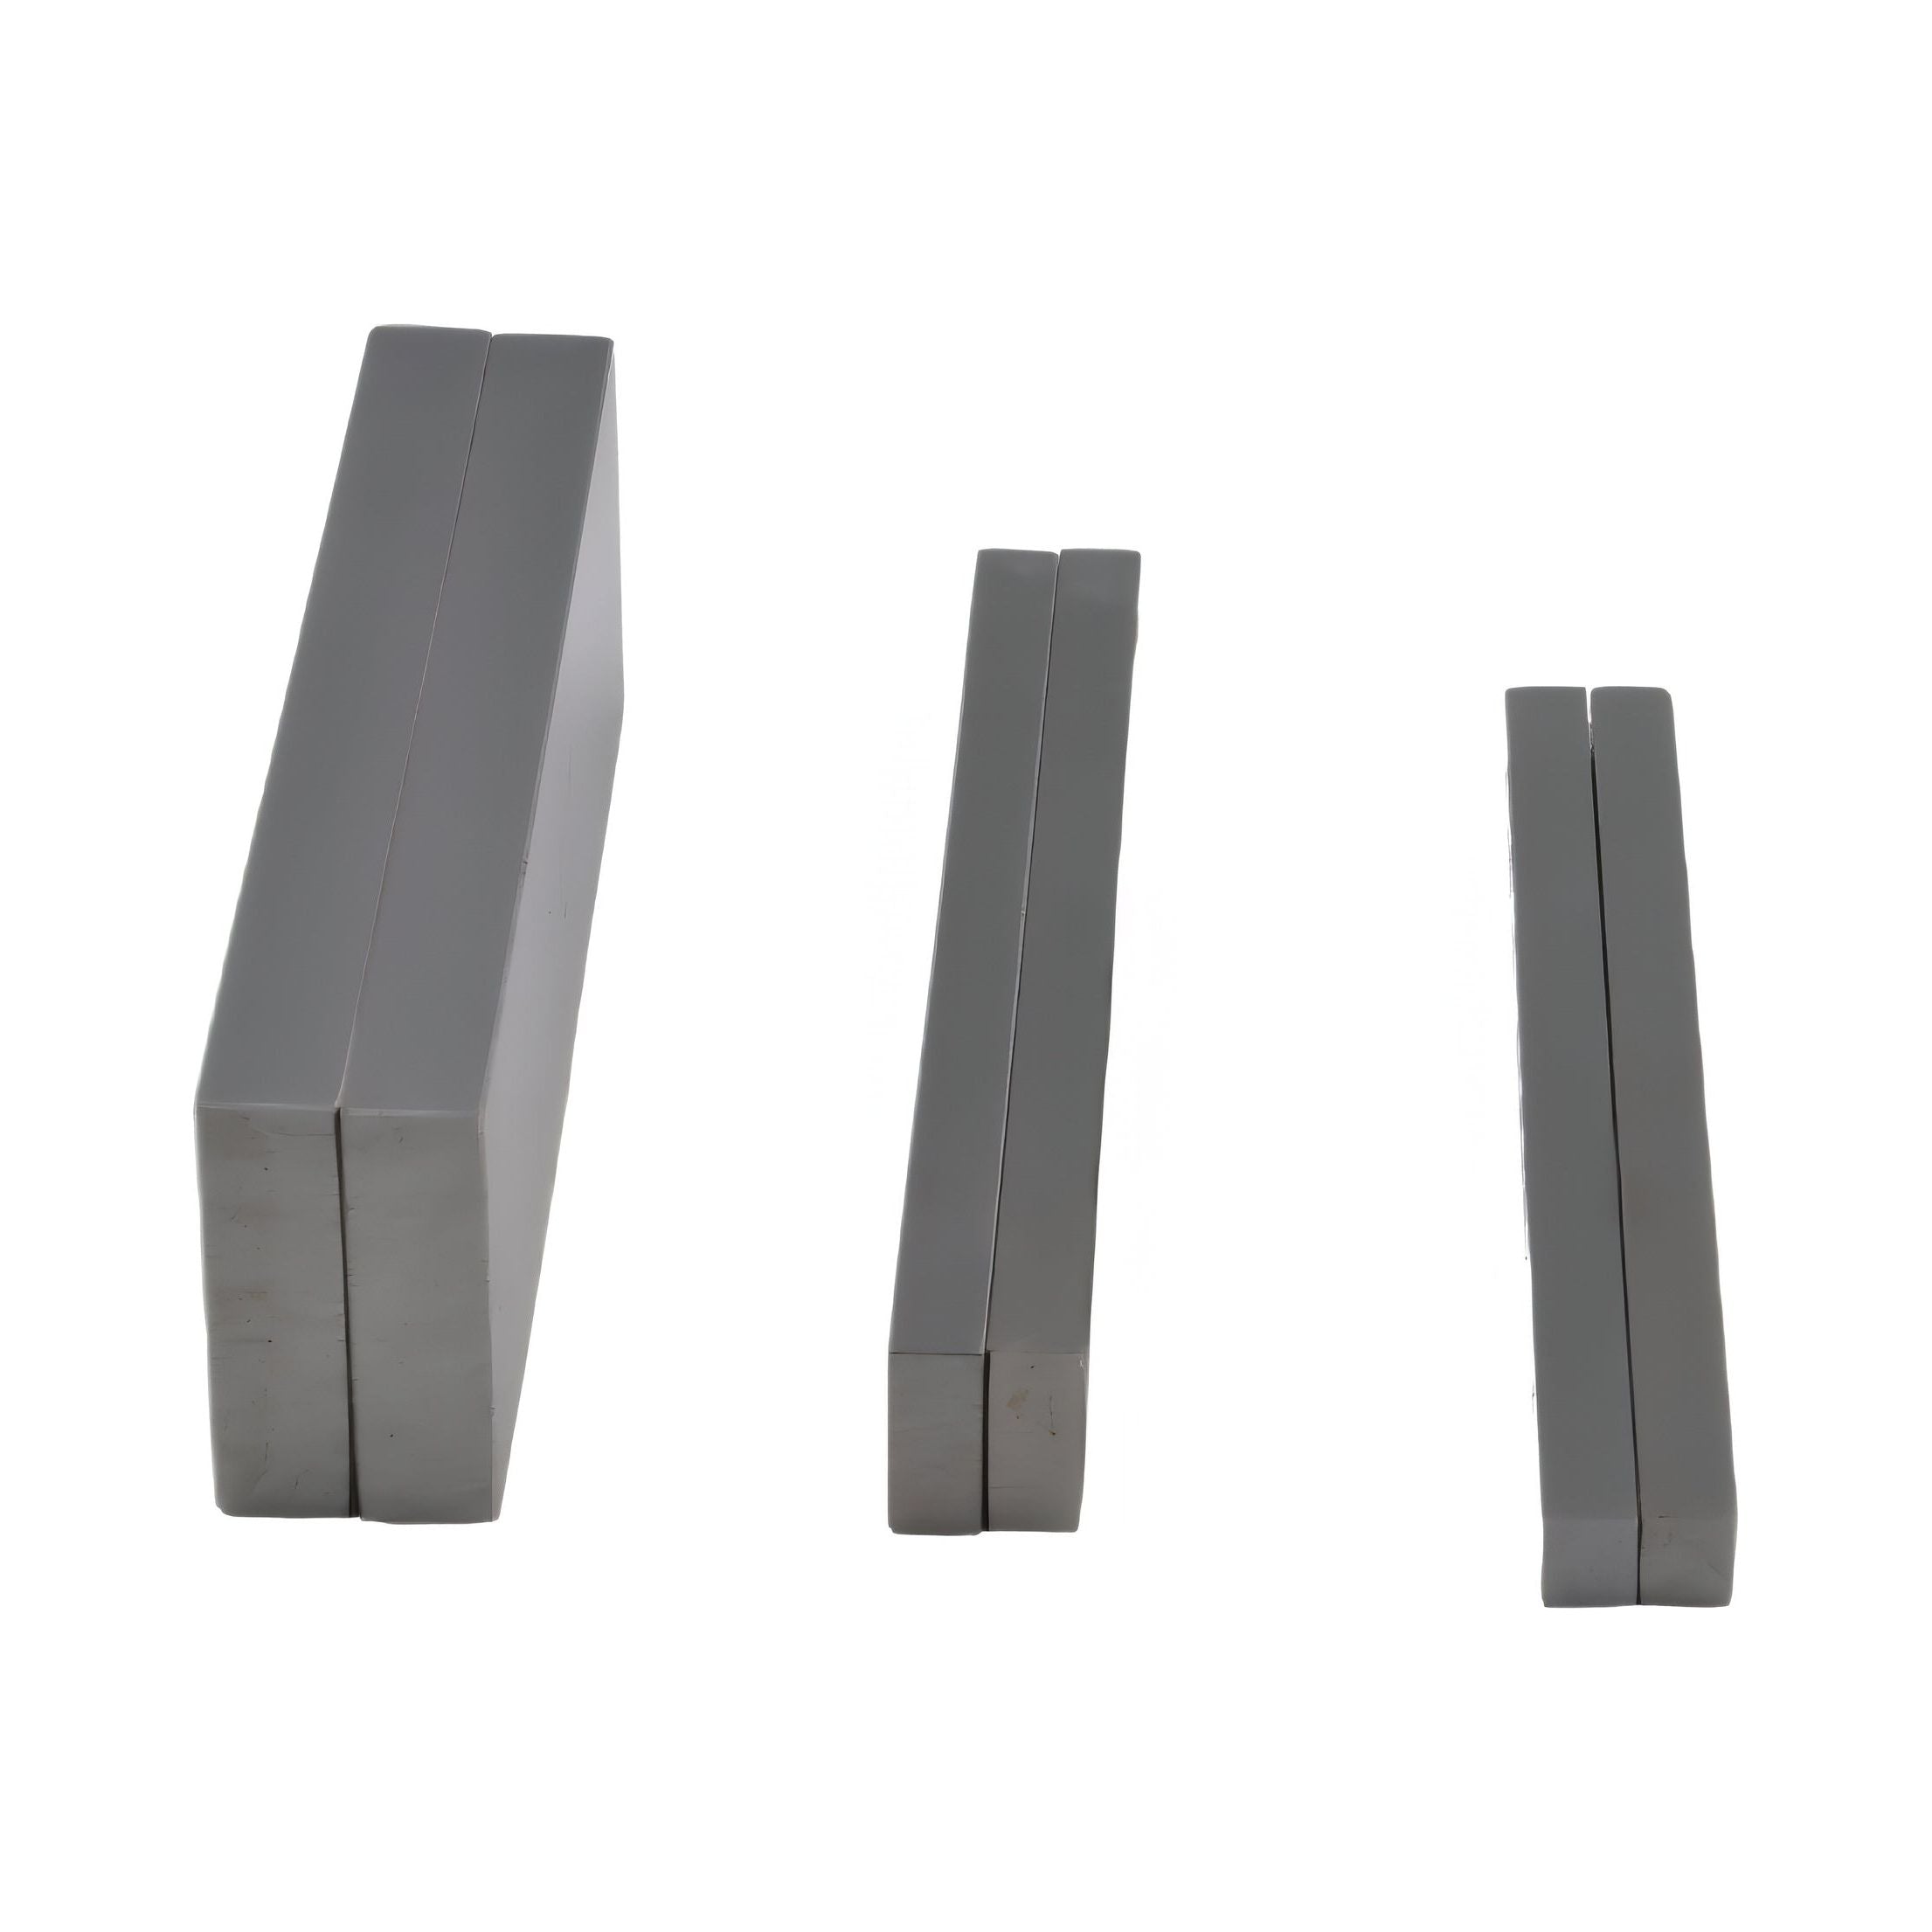  7 pairs Parallel Steel Gauge Block Set Ground Steel 14 plates150 mm Long